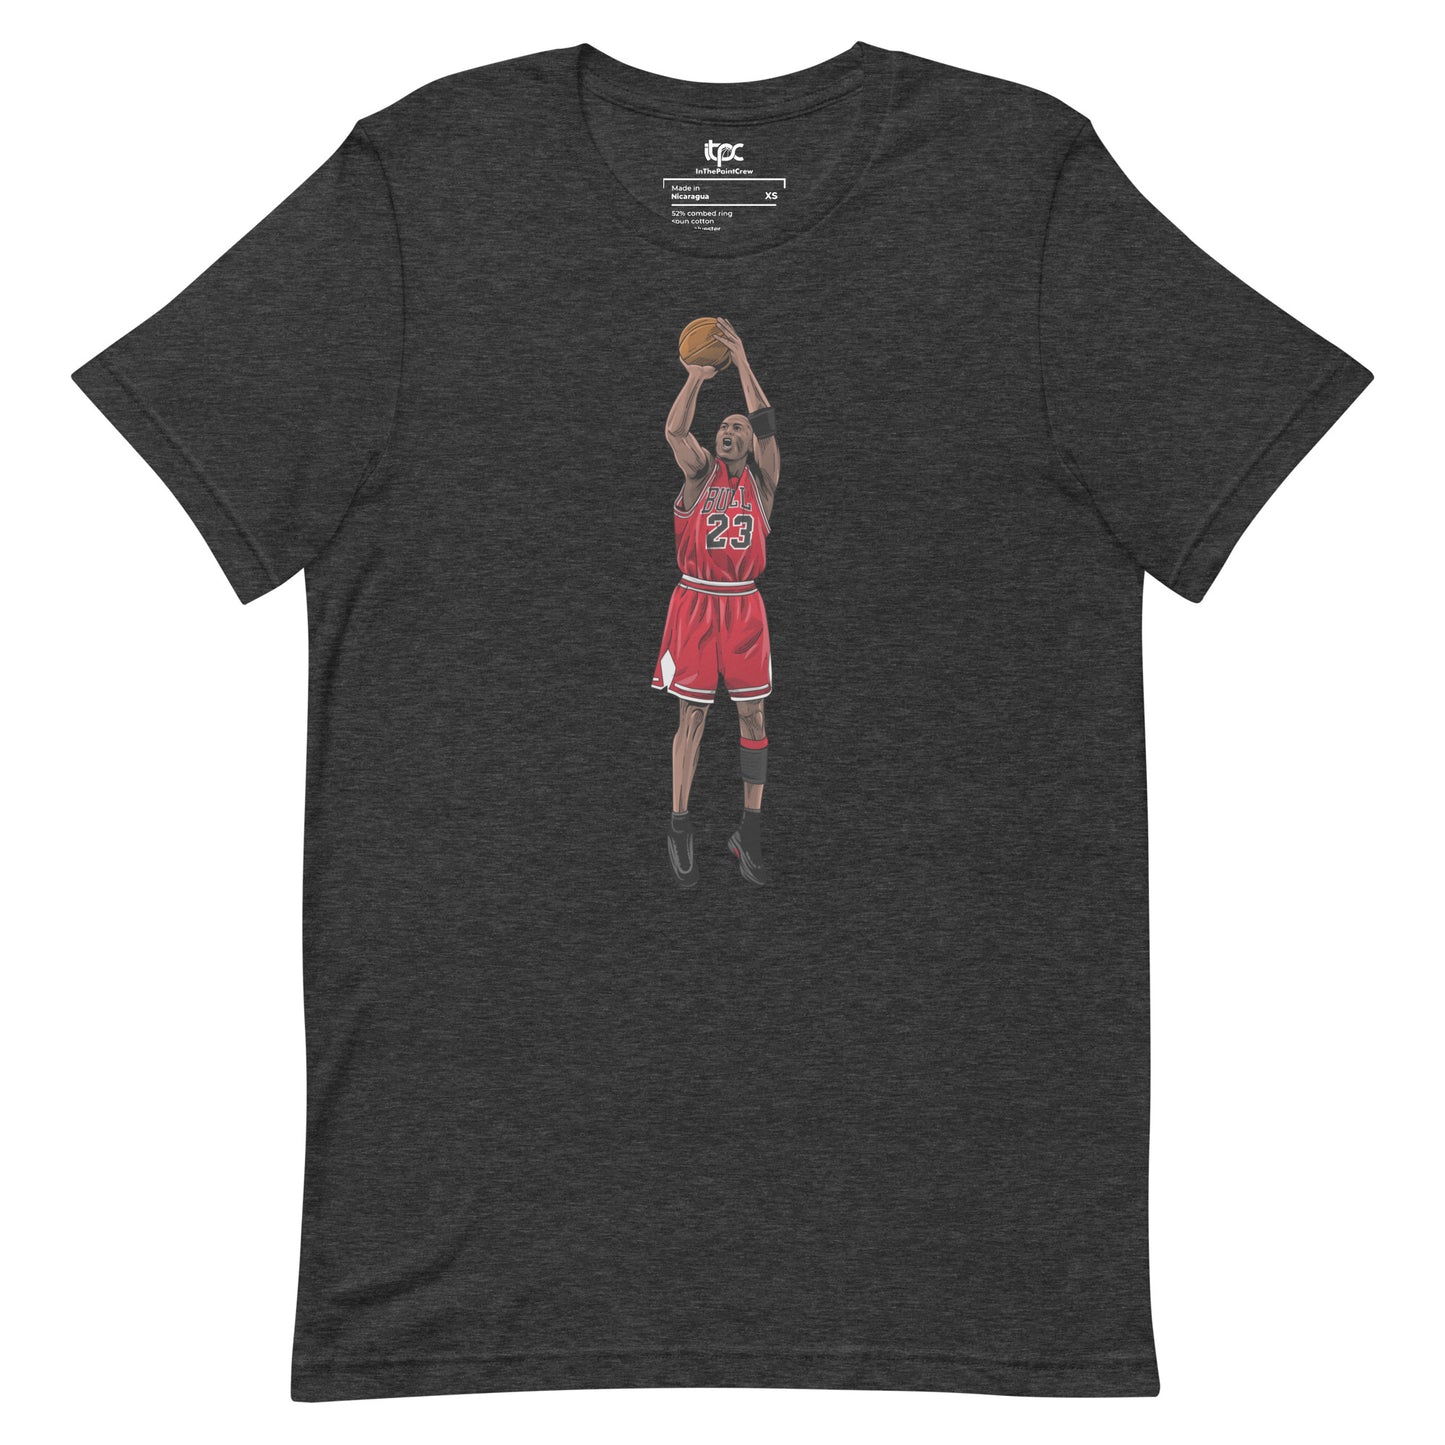 Michael Jordan - "The Last Shot" t-shirt